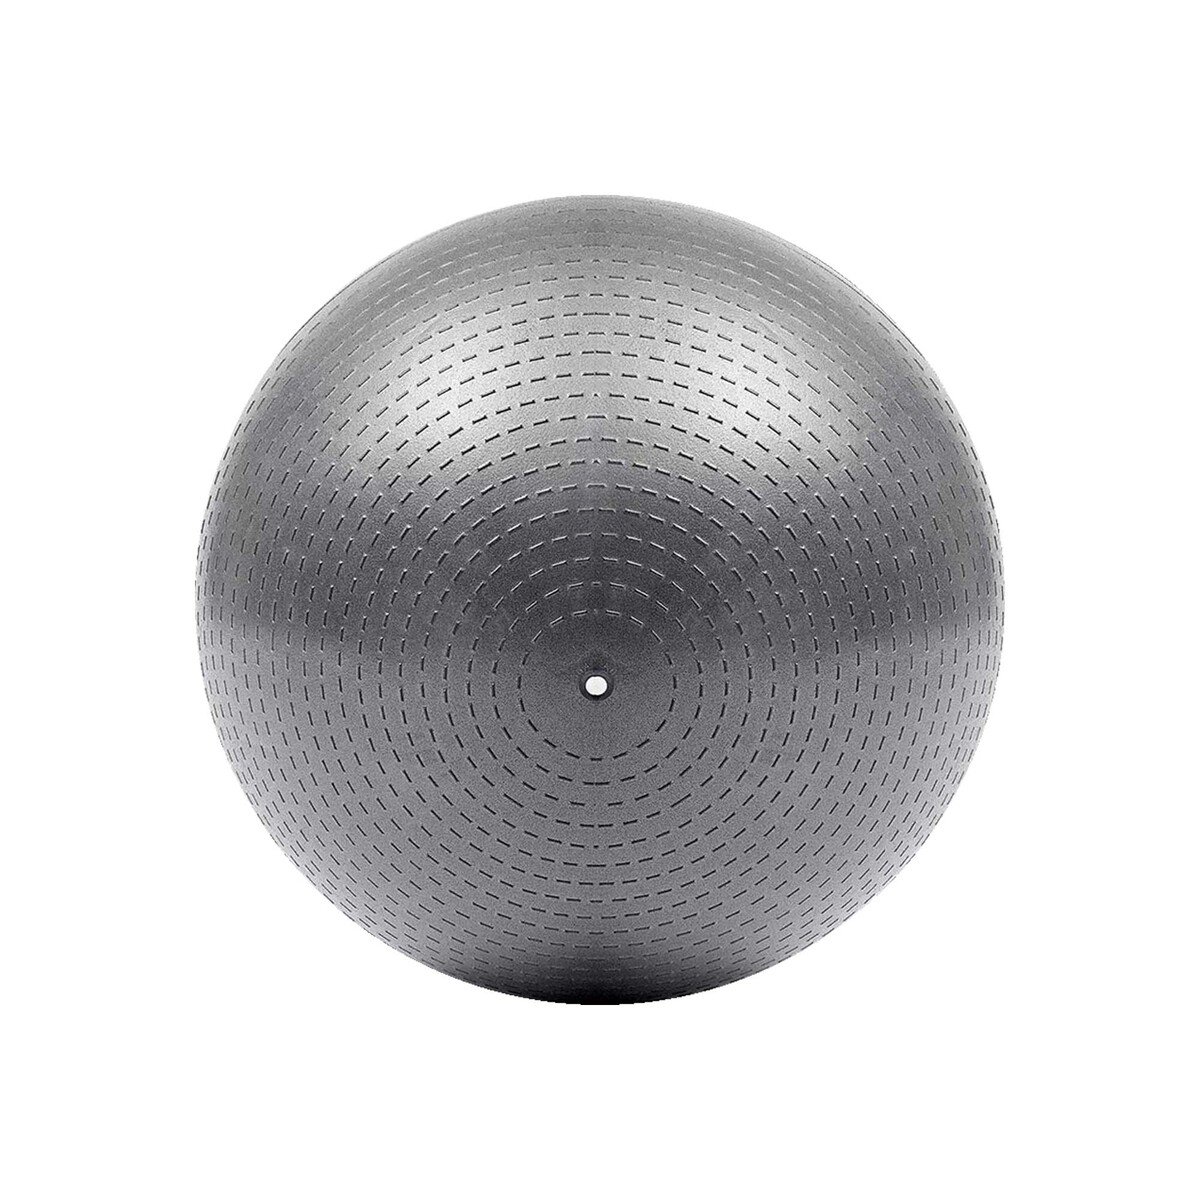 Adidas Gym Ball 65" ADBL-11246GR Grey